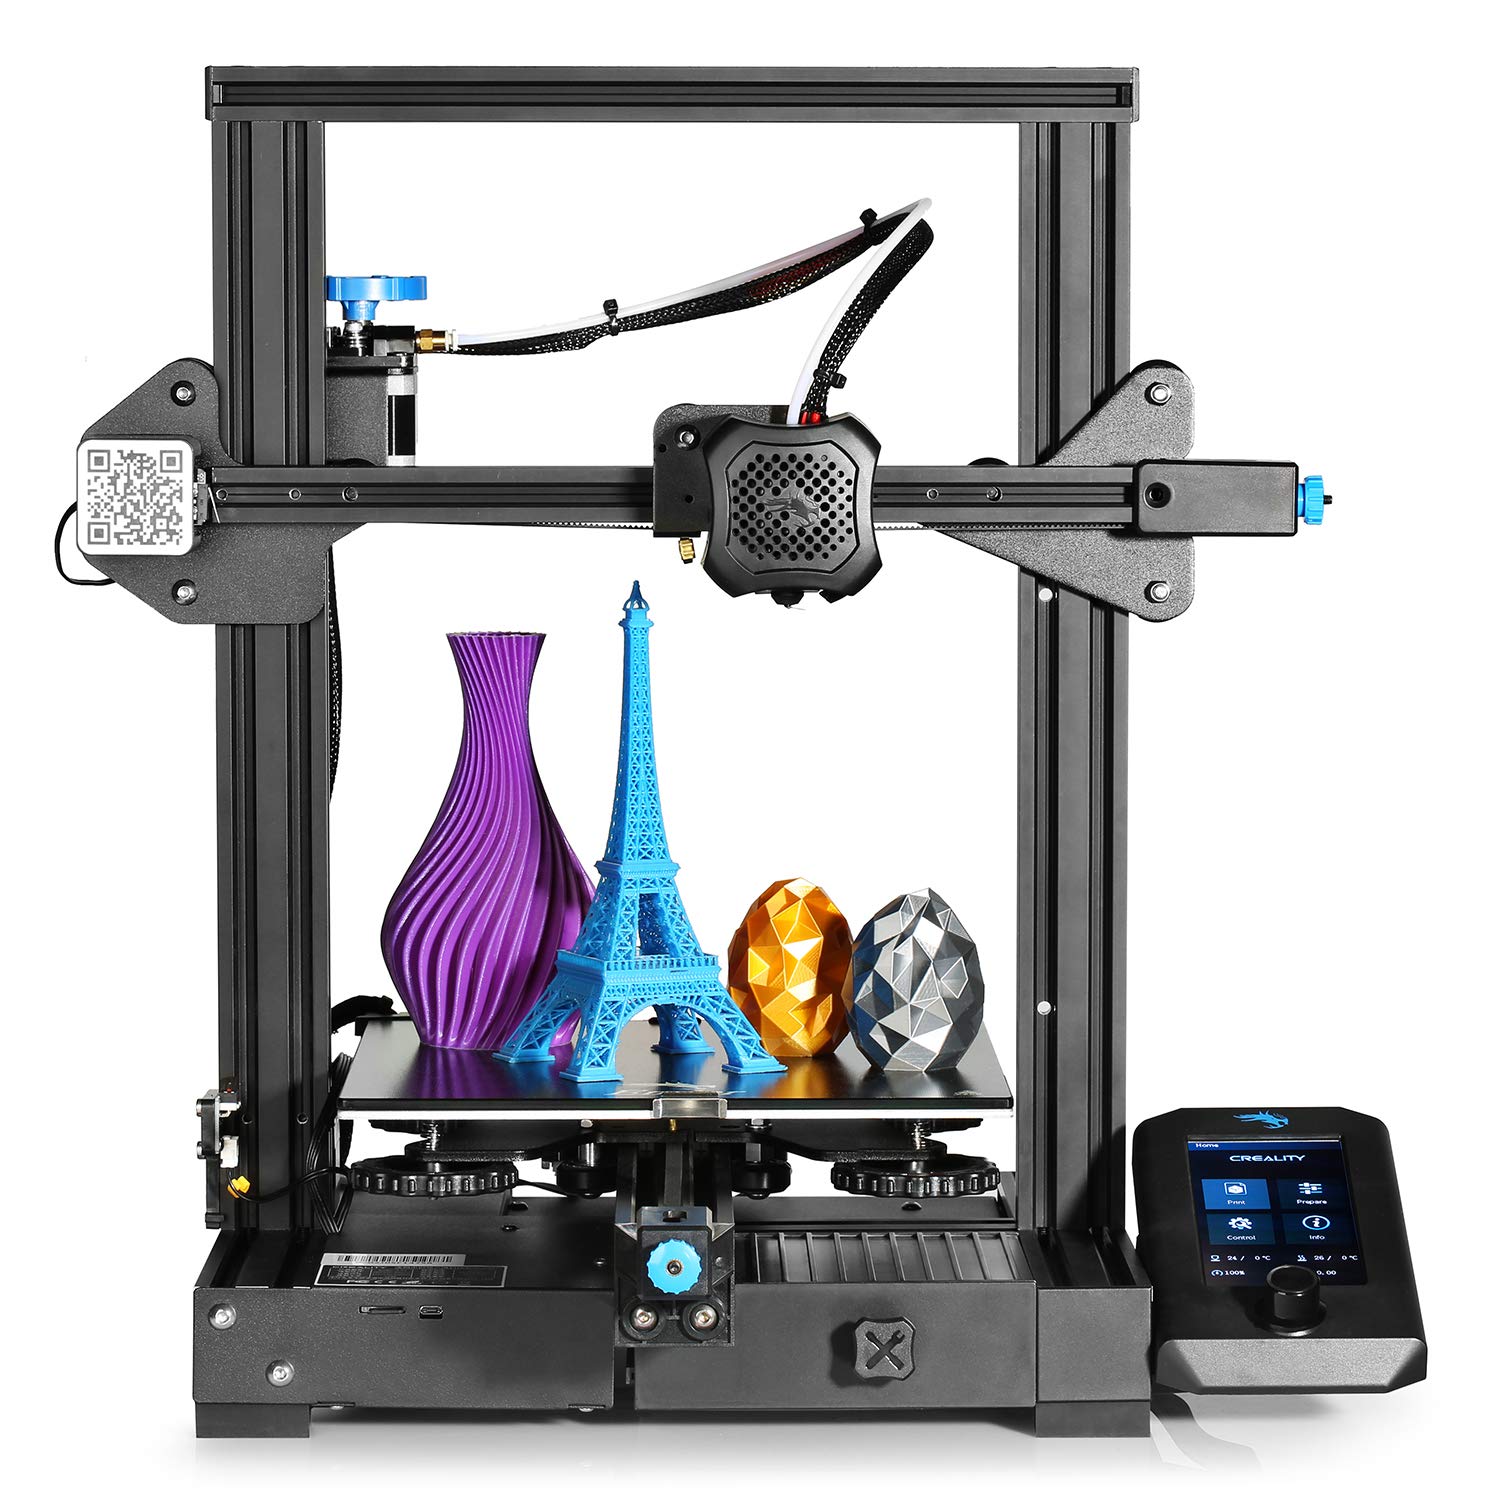 CREALITY 3D Printer on X: What makes the Ender-3 V3 KE build